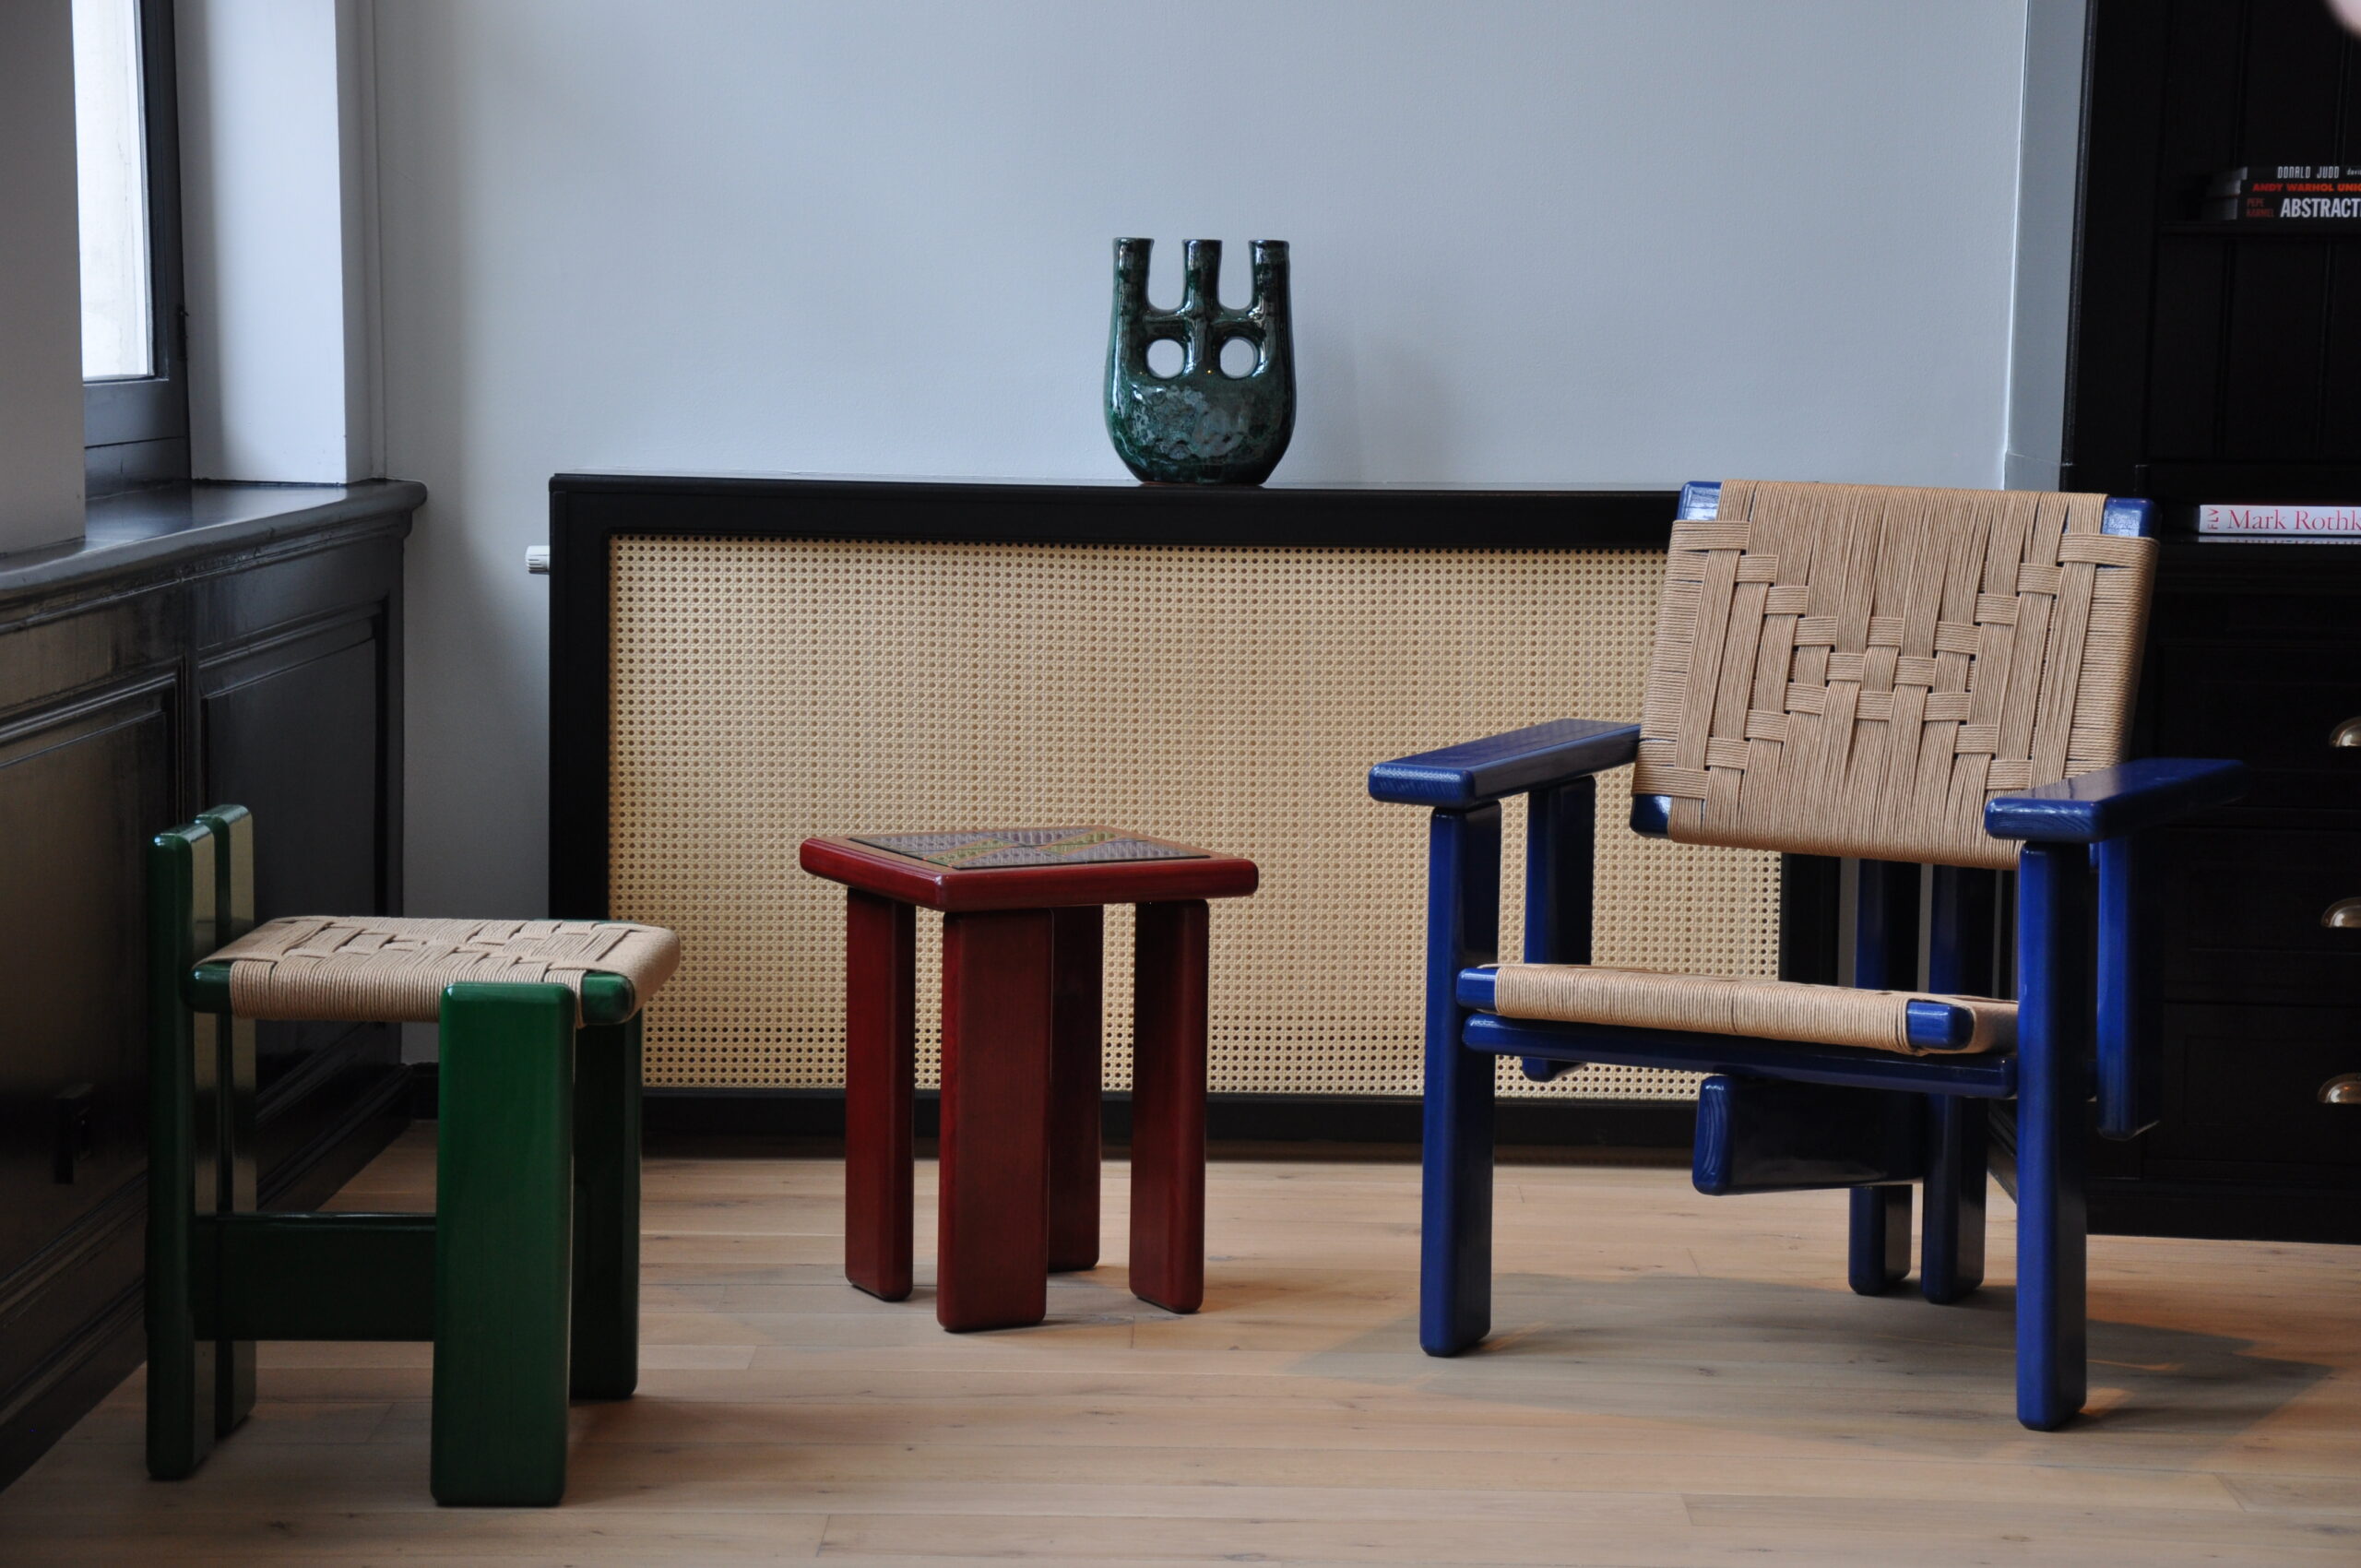 Bemelmans Design hand-made design furniture, produced in Belgium, Belgium Design